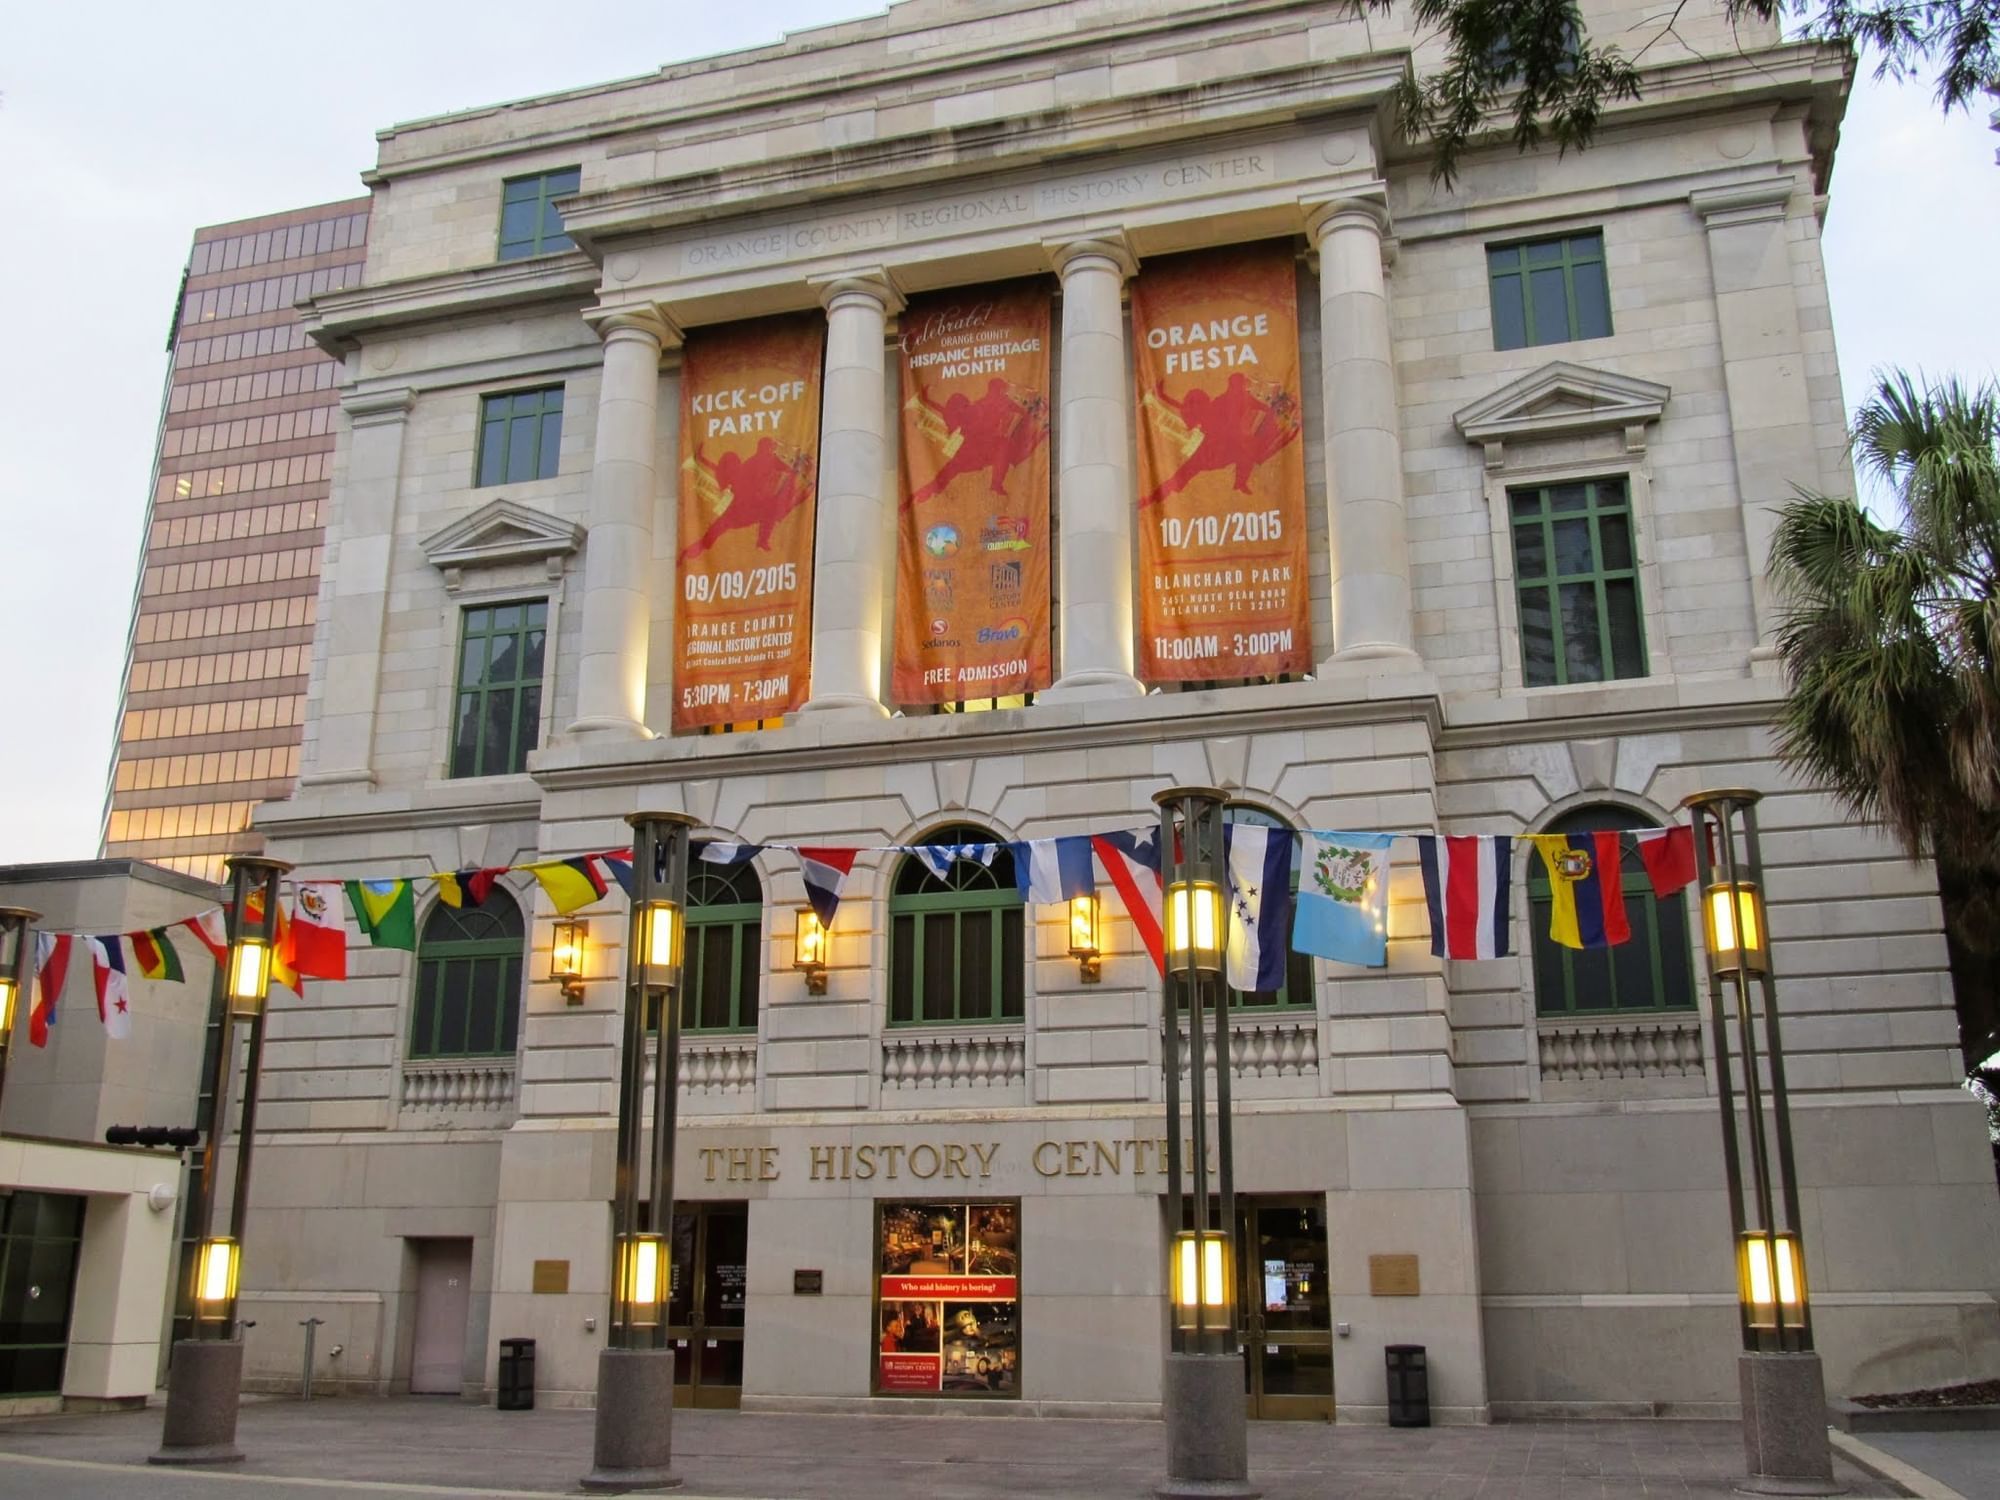 The Orlando arts scene includes the Orlando History Center